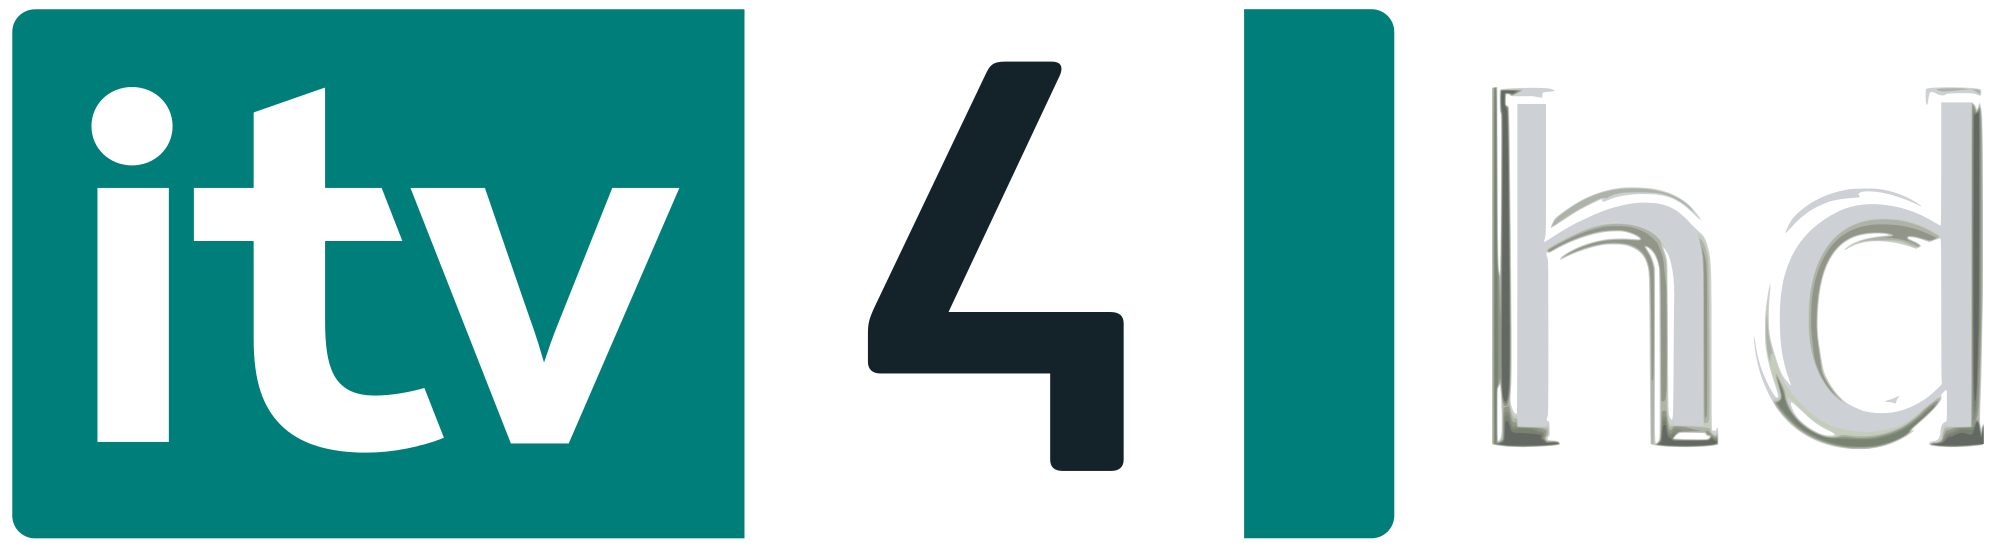 ITV 4 HD logo vector download